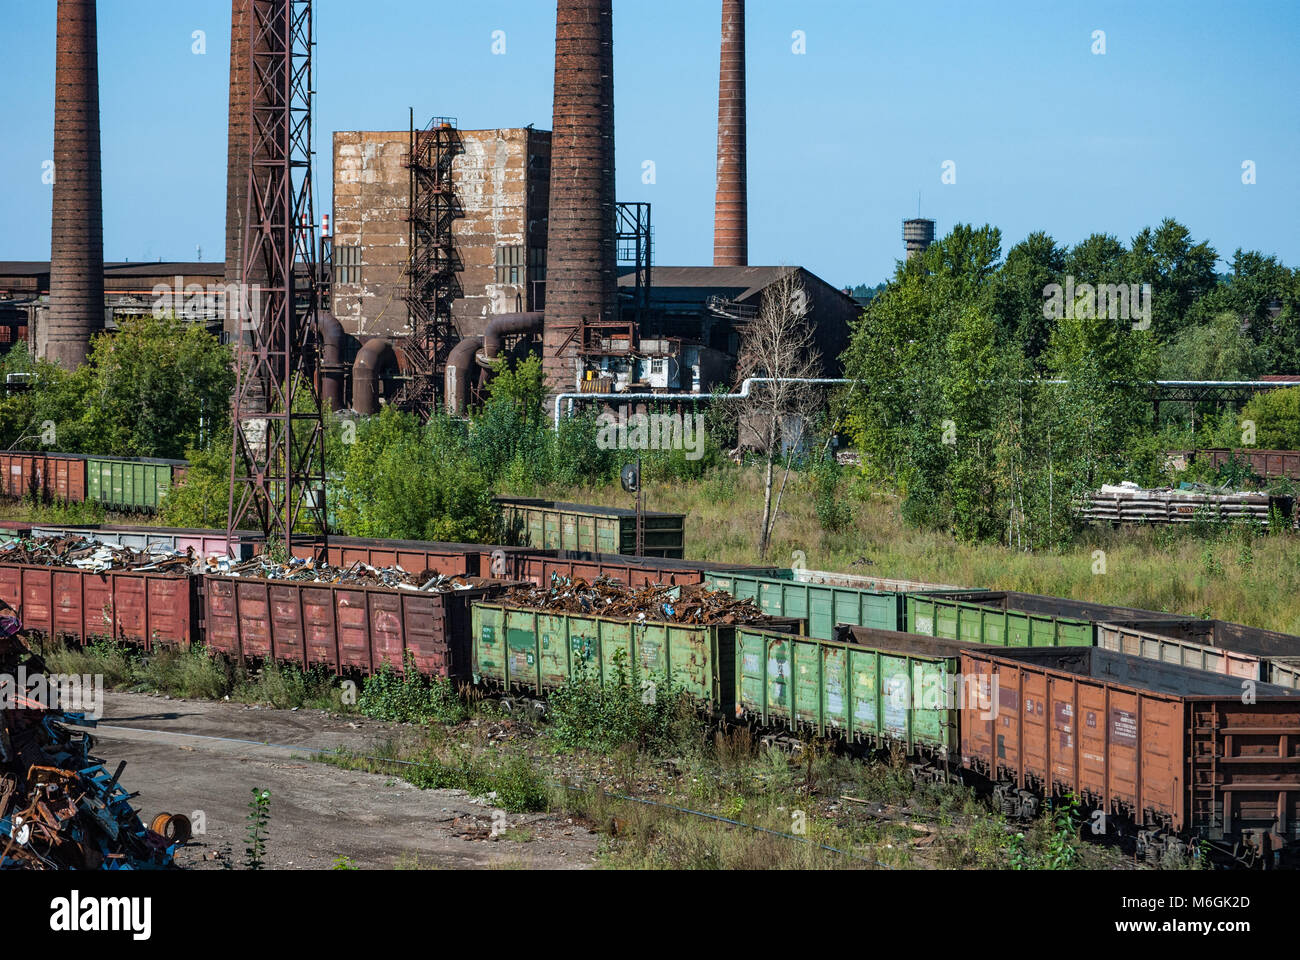 Complejo industrial abandonado, con estacas de humo altas y desgastadas que se elevan sobre los edificios en ruinas contra un cielo azul claro Foto de stock